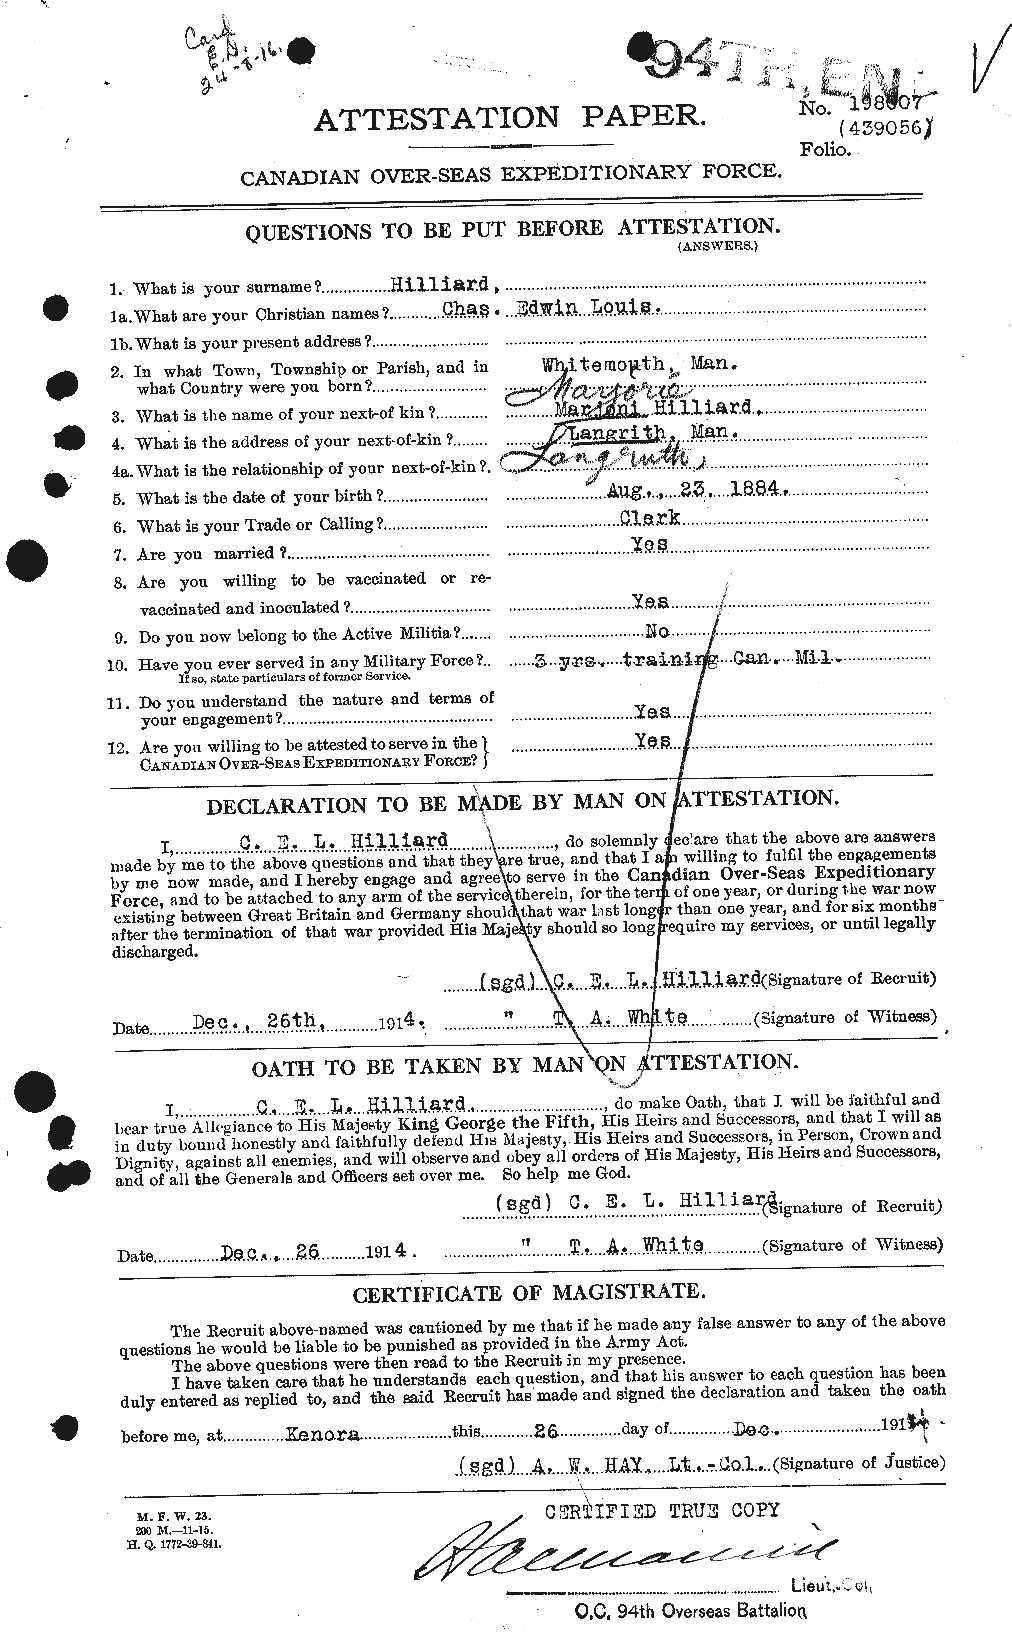 Dossiers du Personnel de la Première Guerre mondiale - CEC 393602a